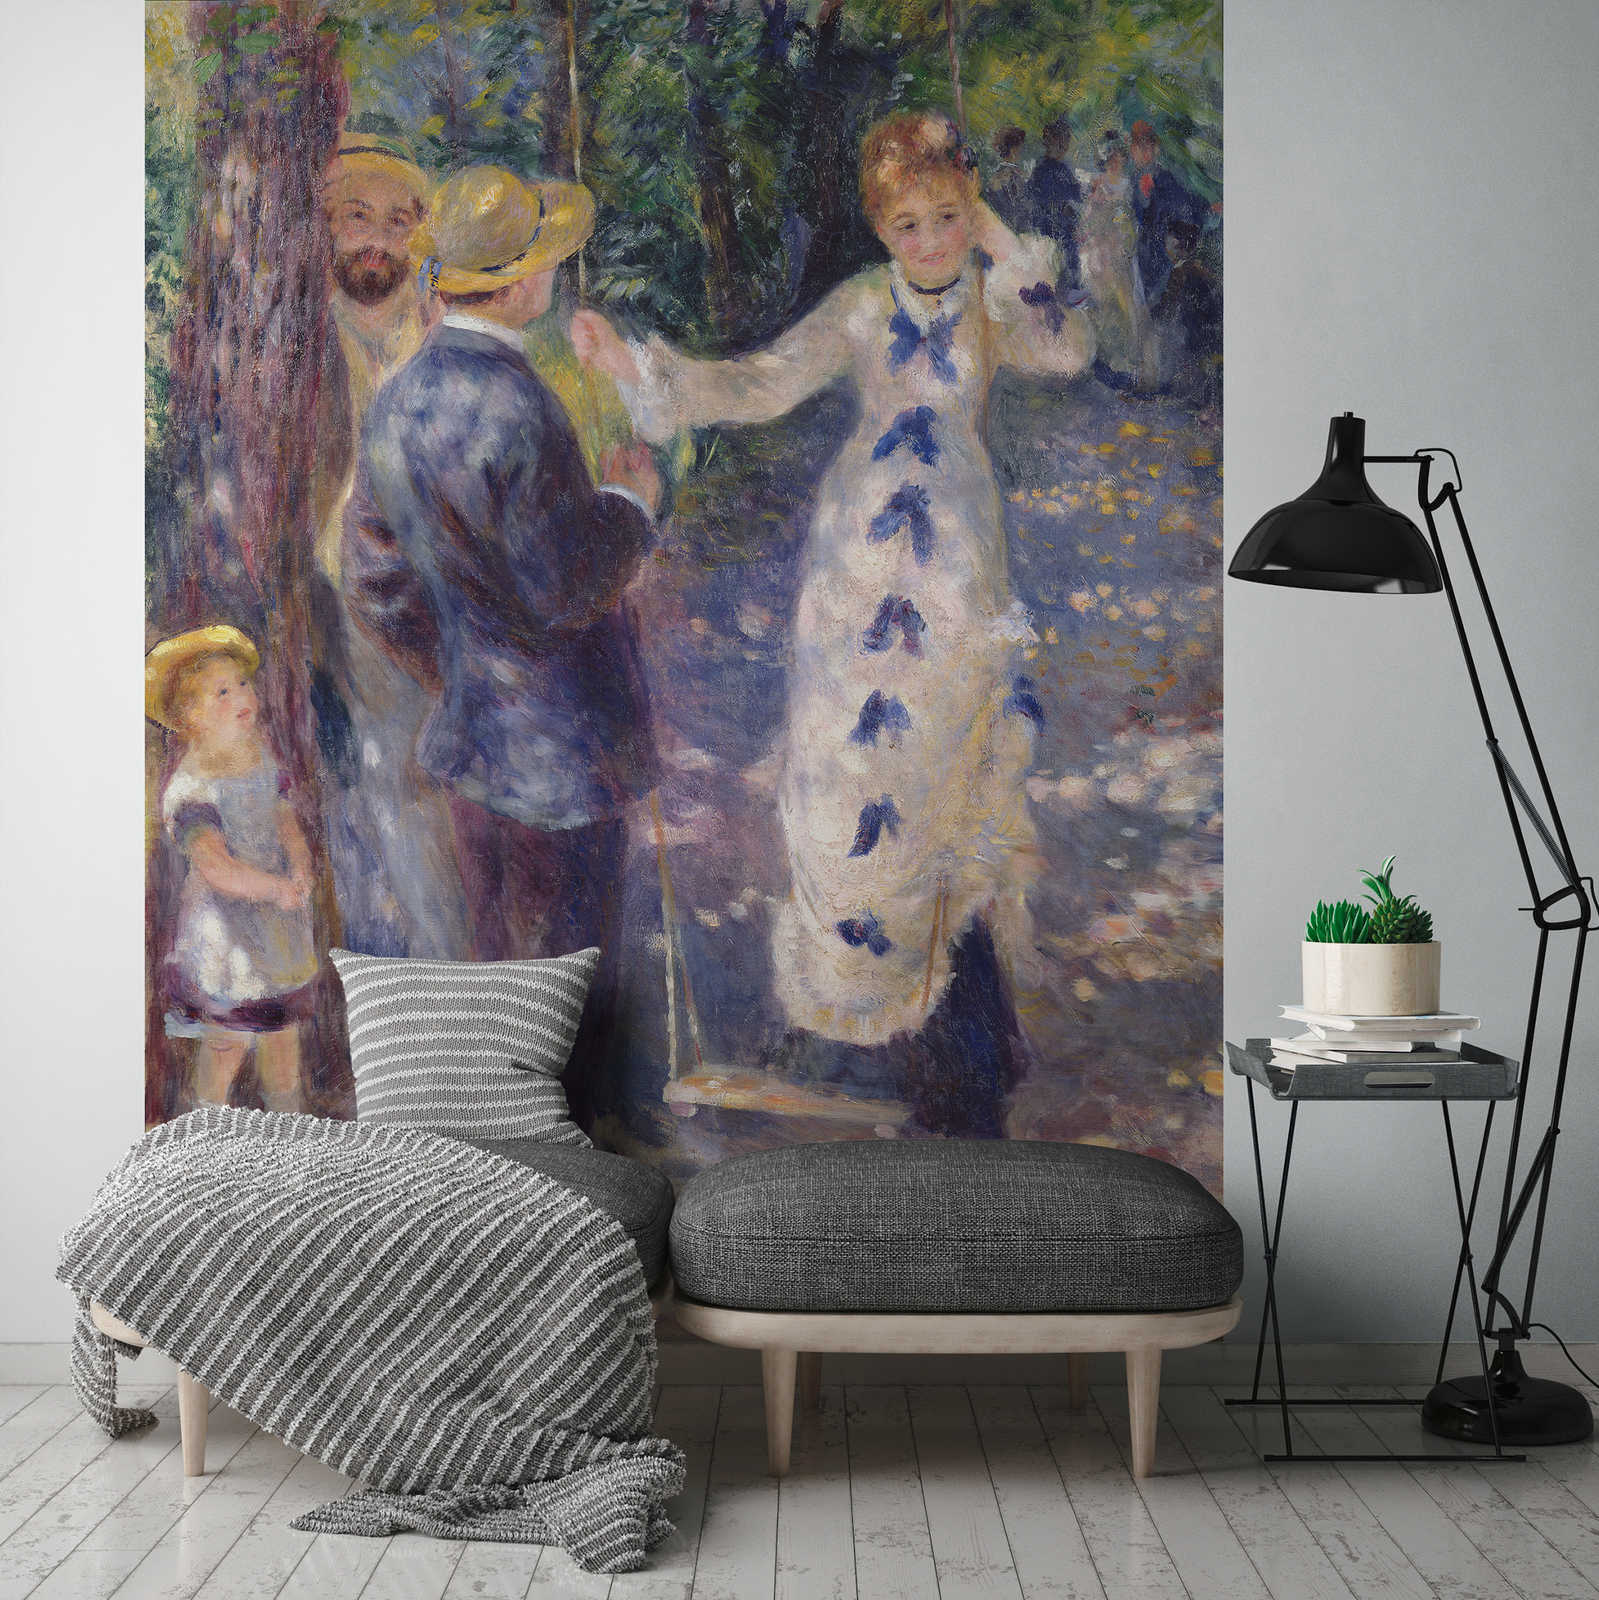             Muurschildering "Op de schommel" door Pierre Auguste Renoir
        